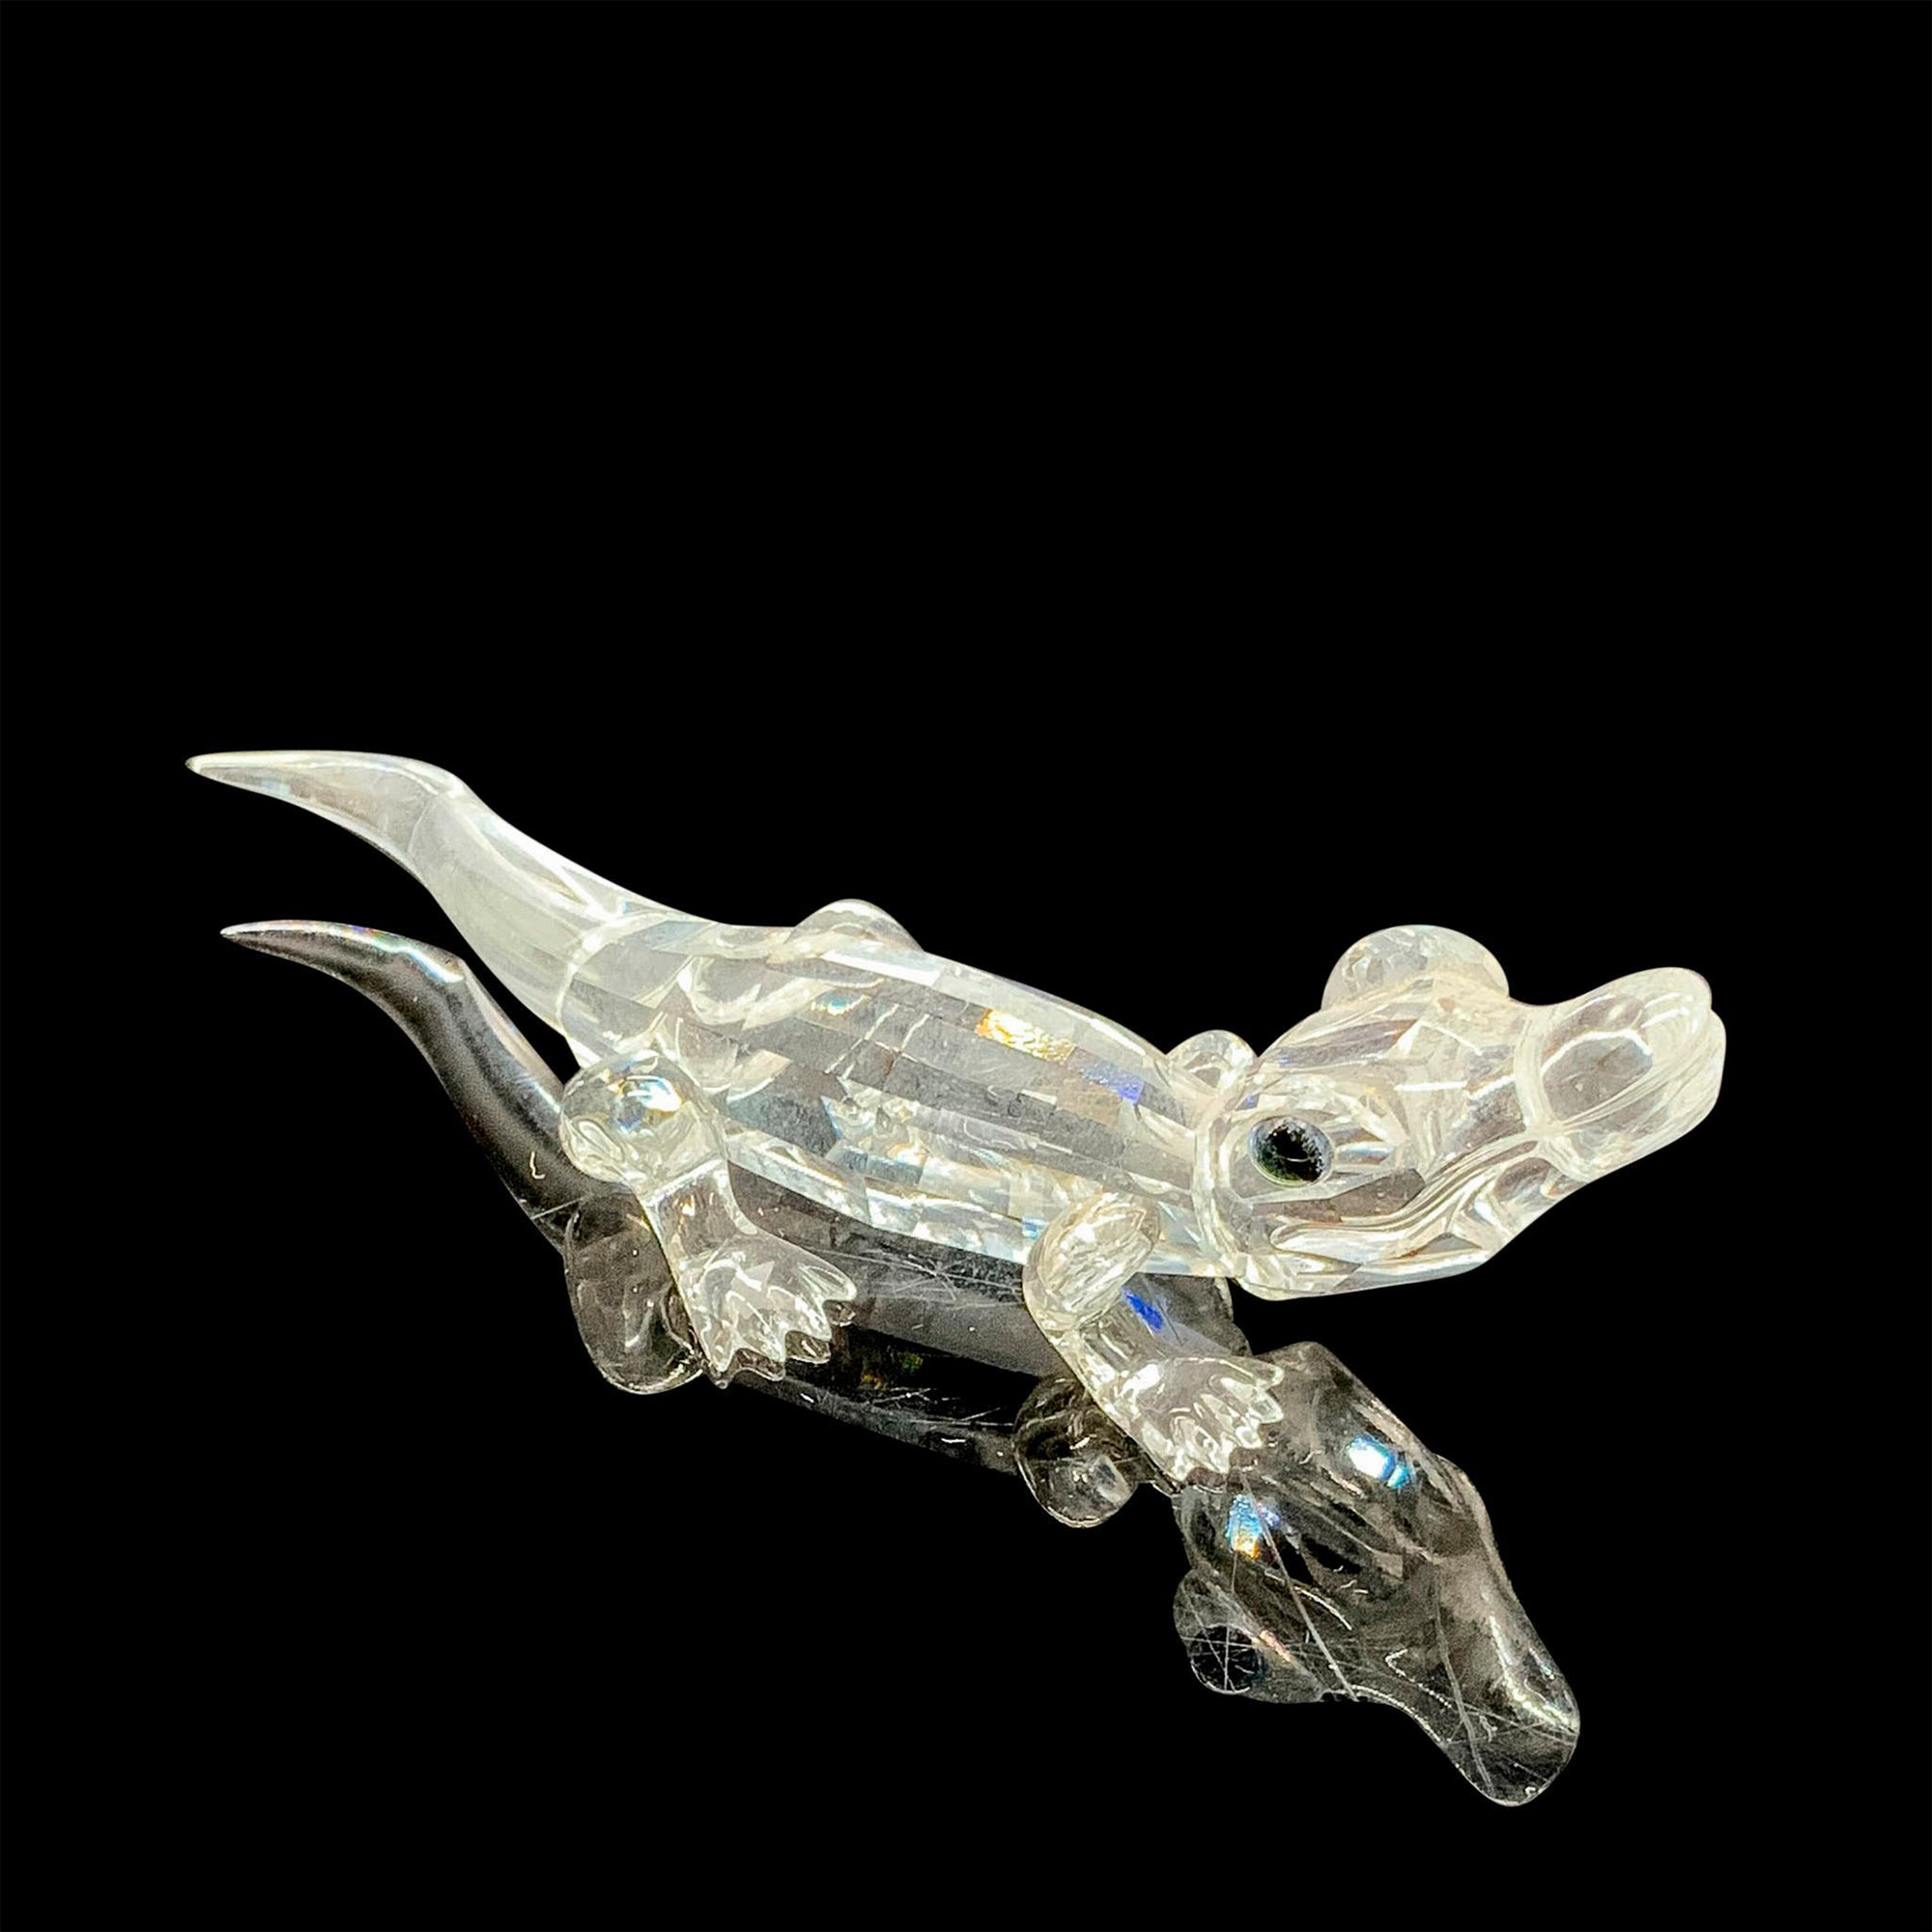 Swarovski Crystal Figurine, Mini Alligator